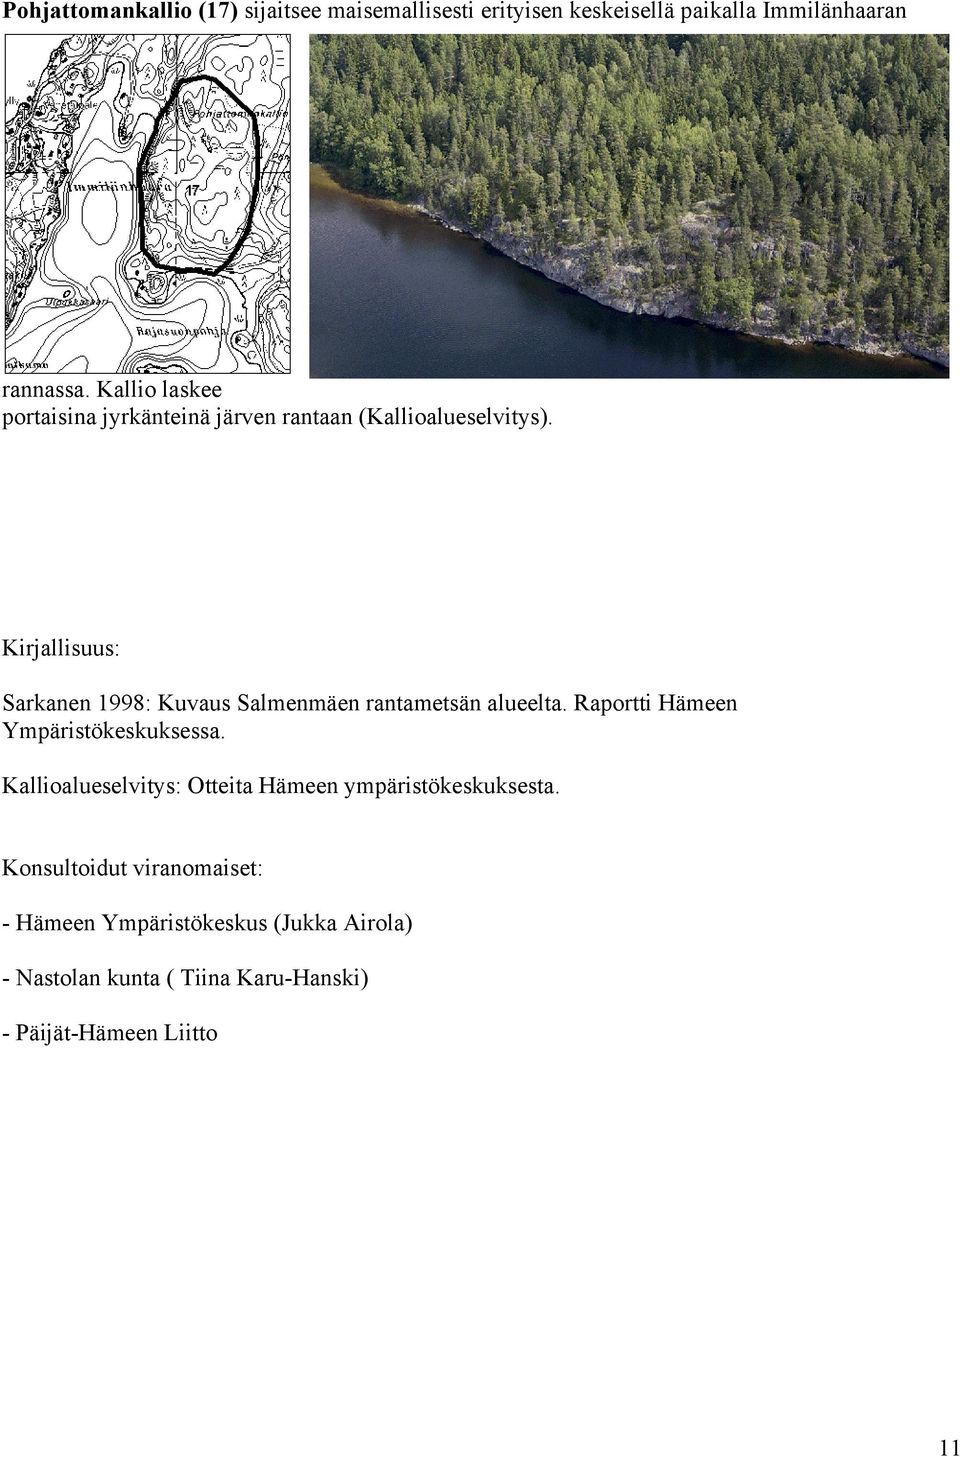 Kirjallisuus: Sarkanen 1998: Kuvaus Salmenmäen rantametsän alueelta. Raportti Hämeen Ympäristökeskuksessa.